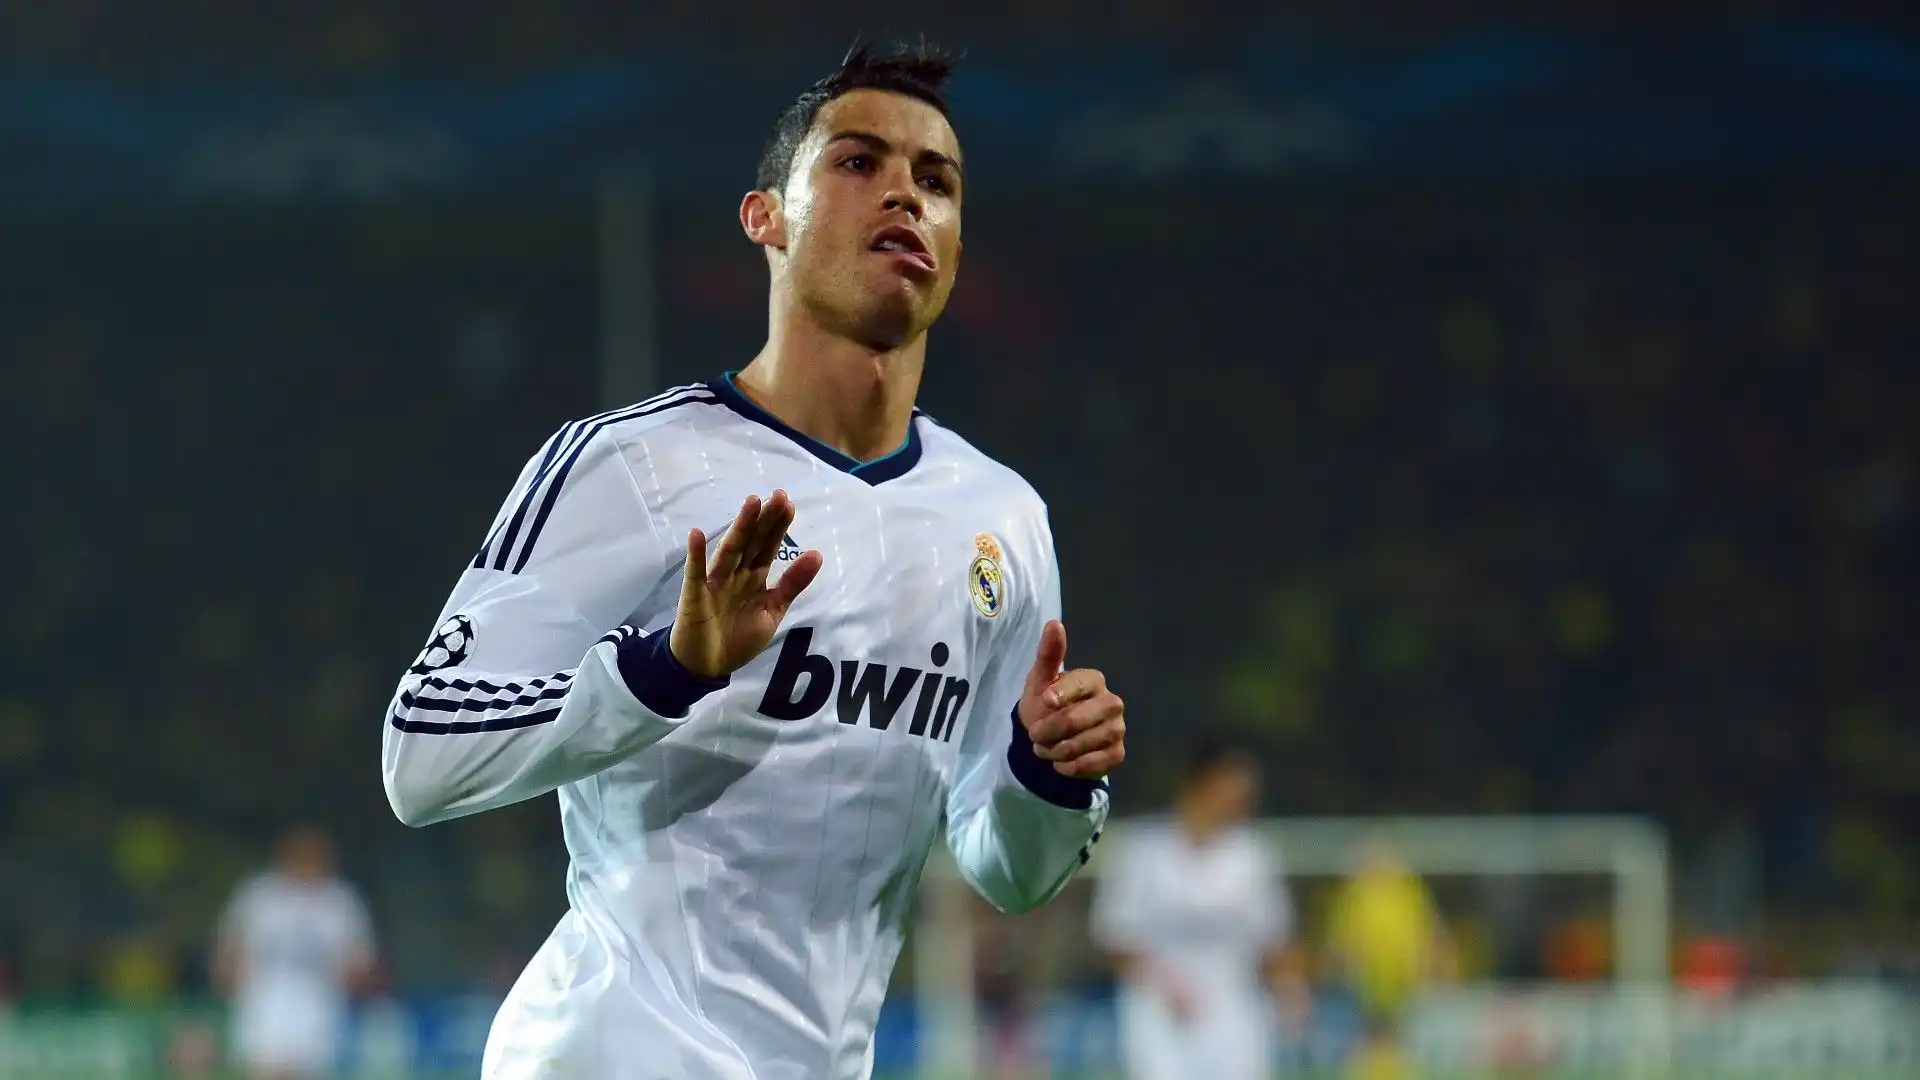 2012/13 Cristiano Ronaldo (Real Madrid) 12 gol in 12 presenze